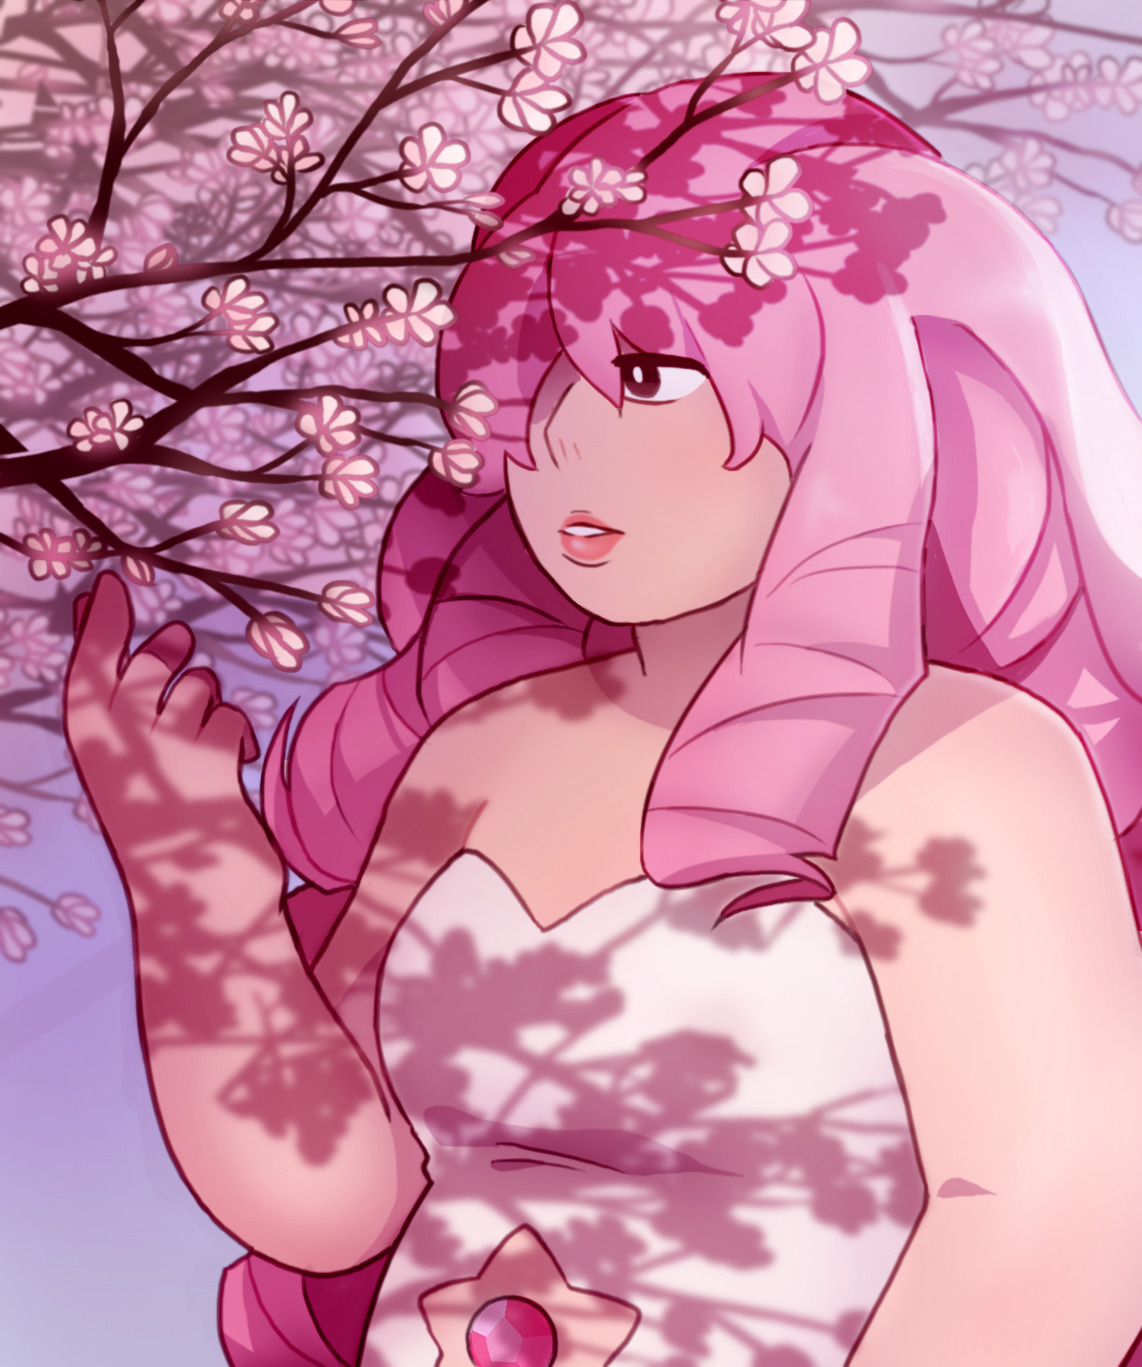 Rose Quartz with cherry blossom 🌸